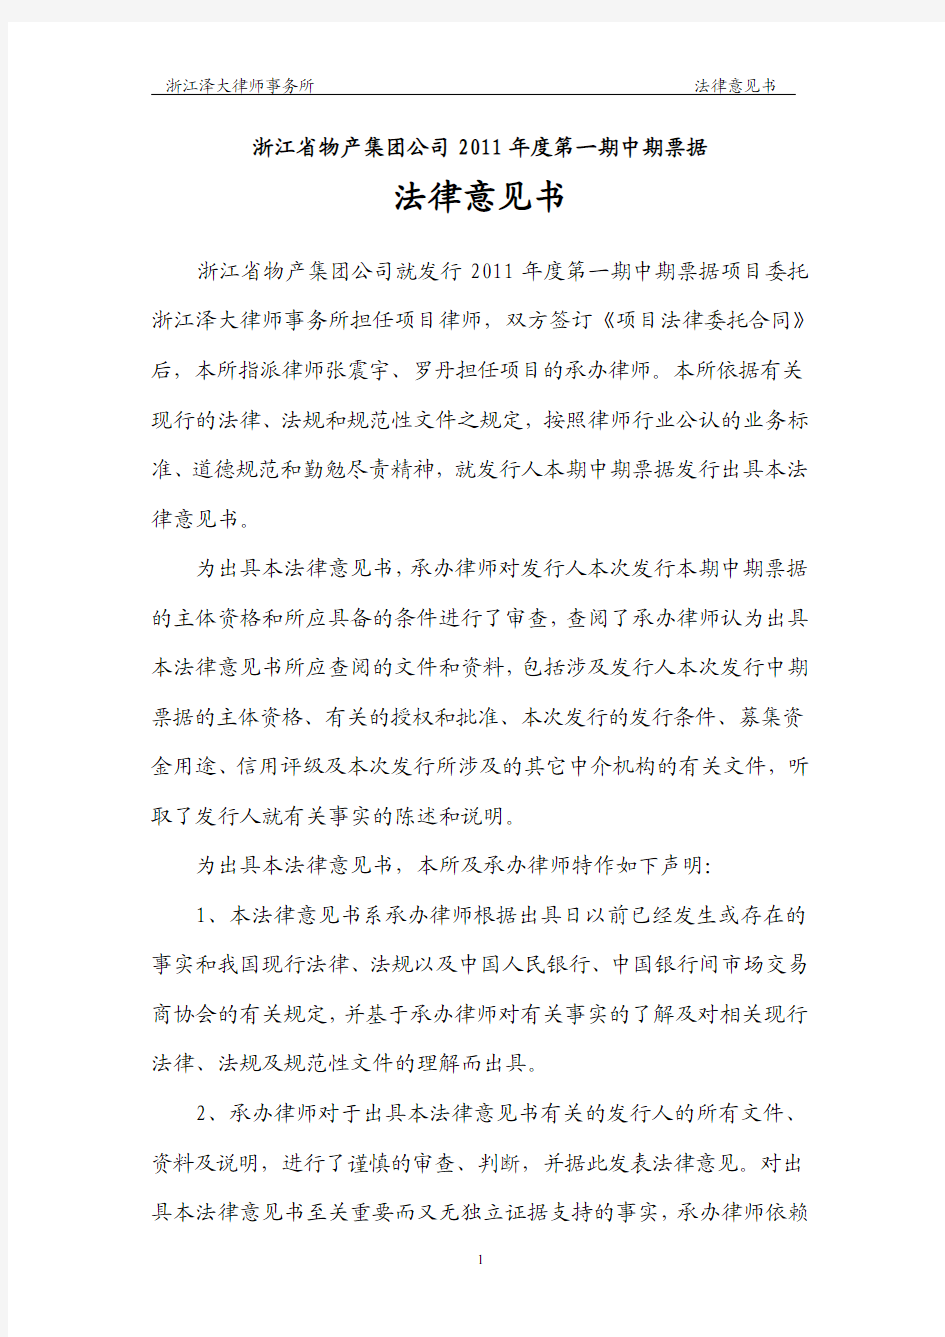 浙江省物产集团公司2011年度第一期中期票据法律意见书